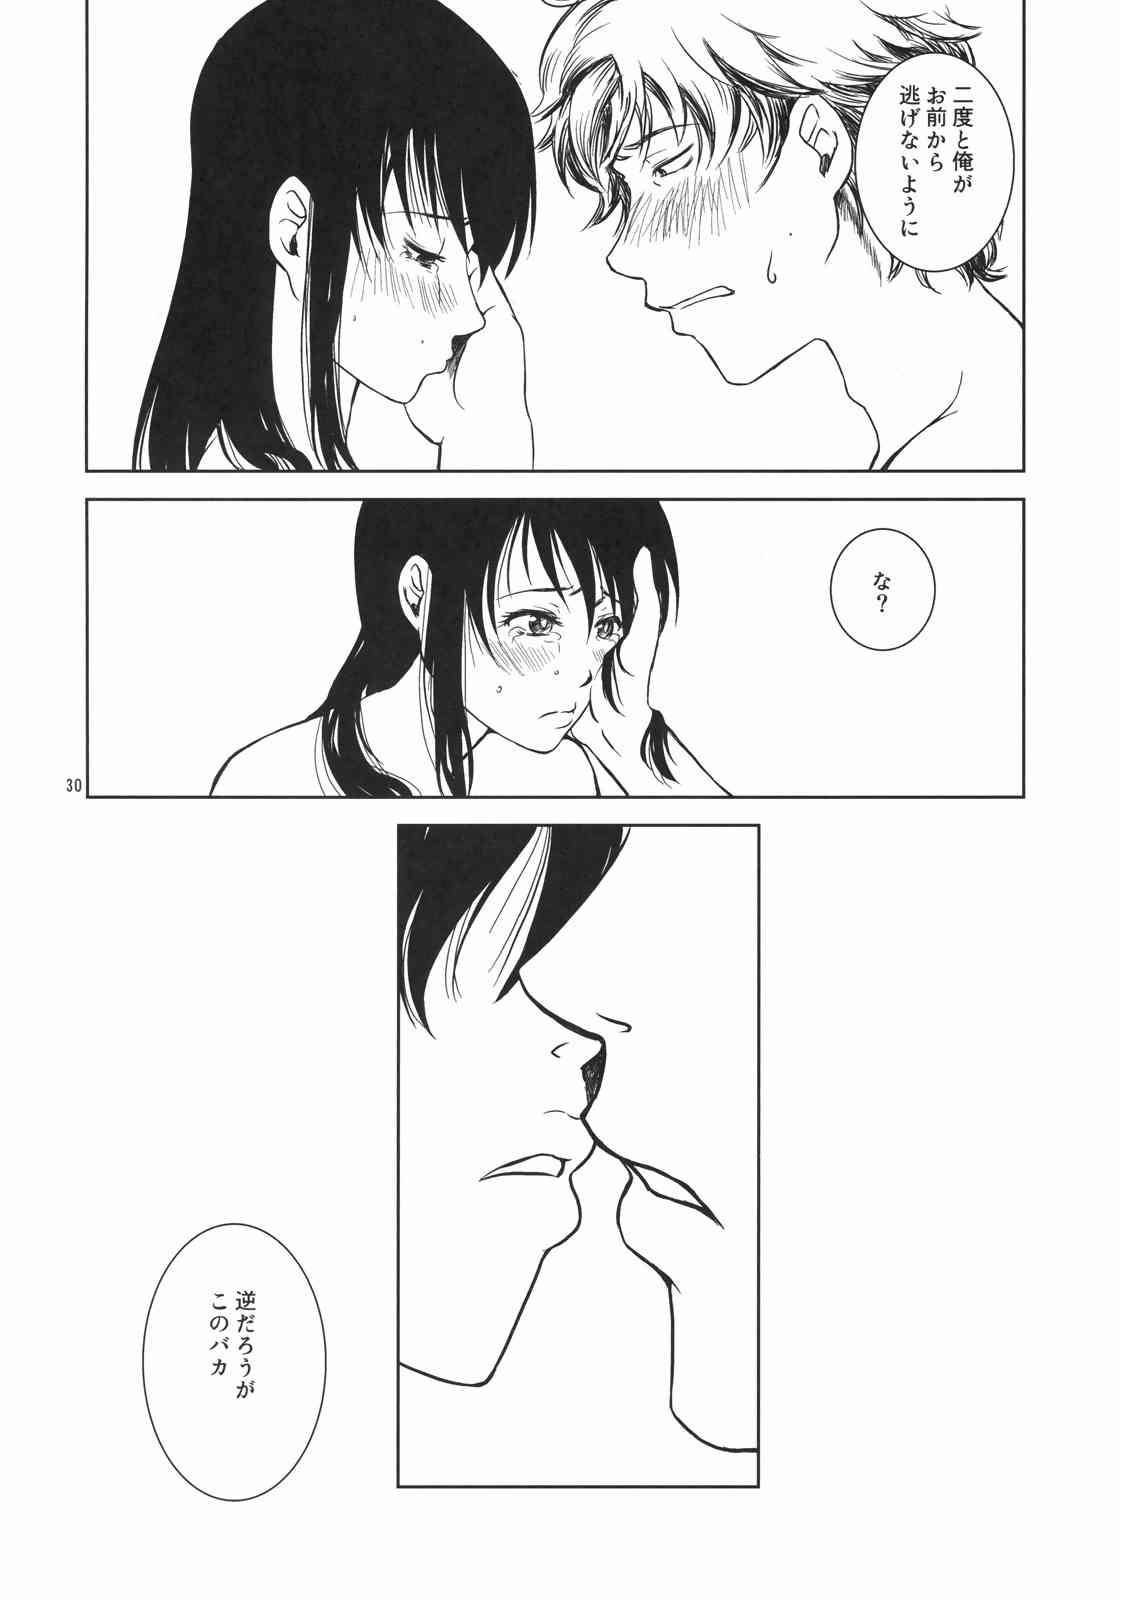 【銀魂】女体化桂と銀さんの初体験イチャラブセックス♡の画像29枚目